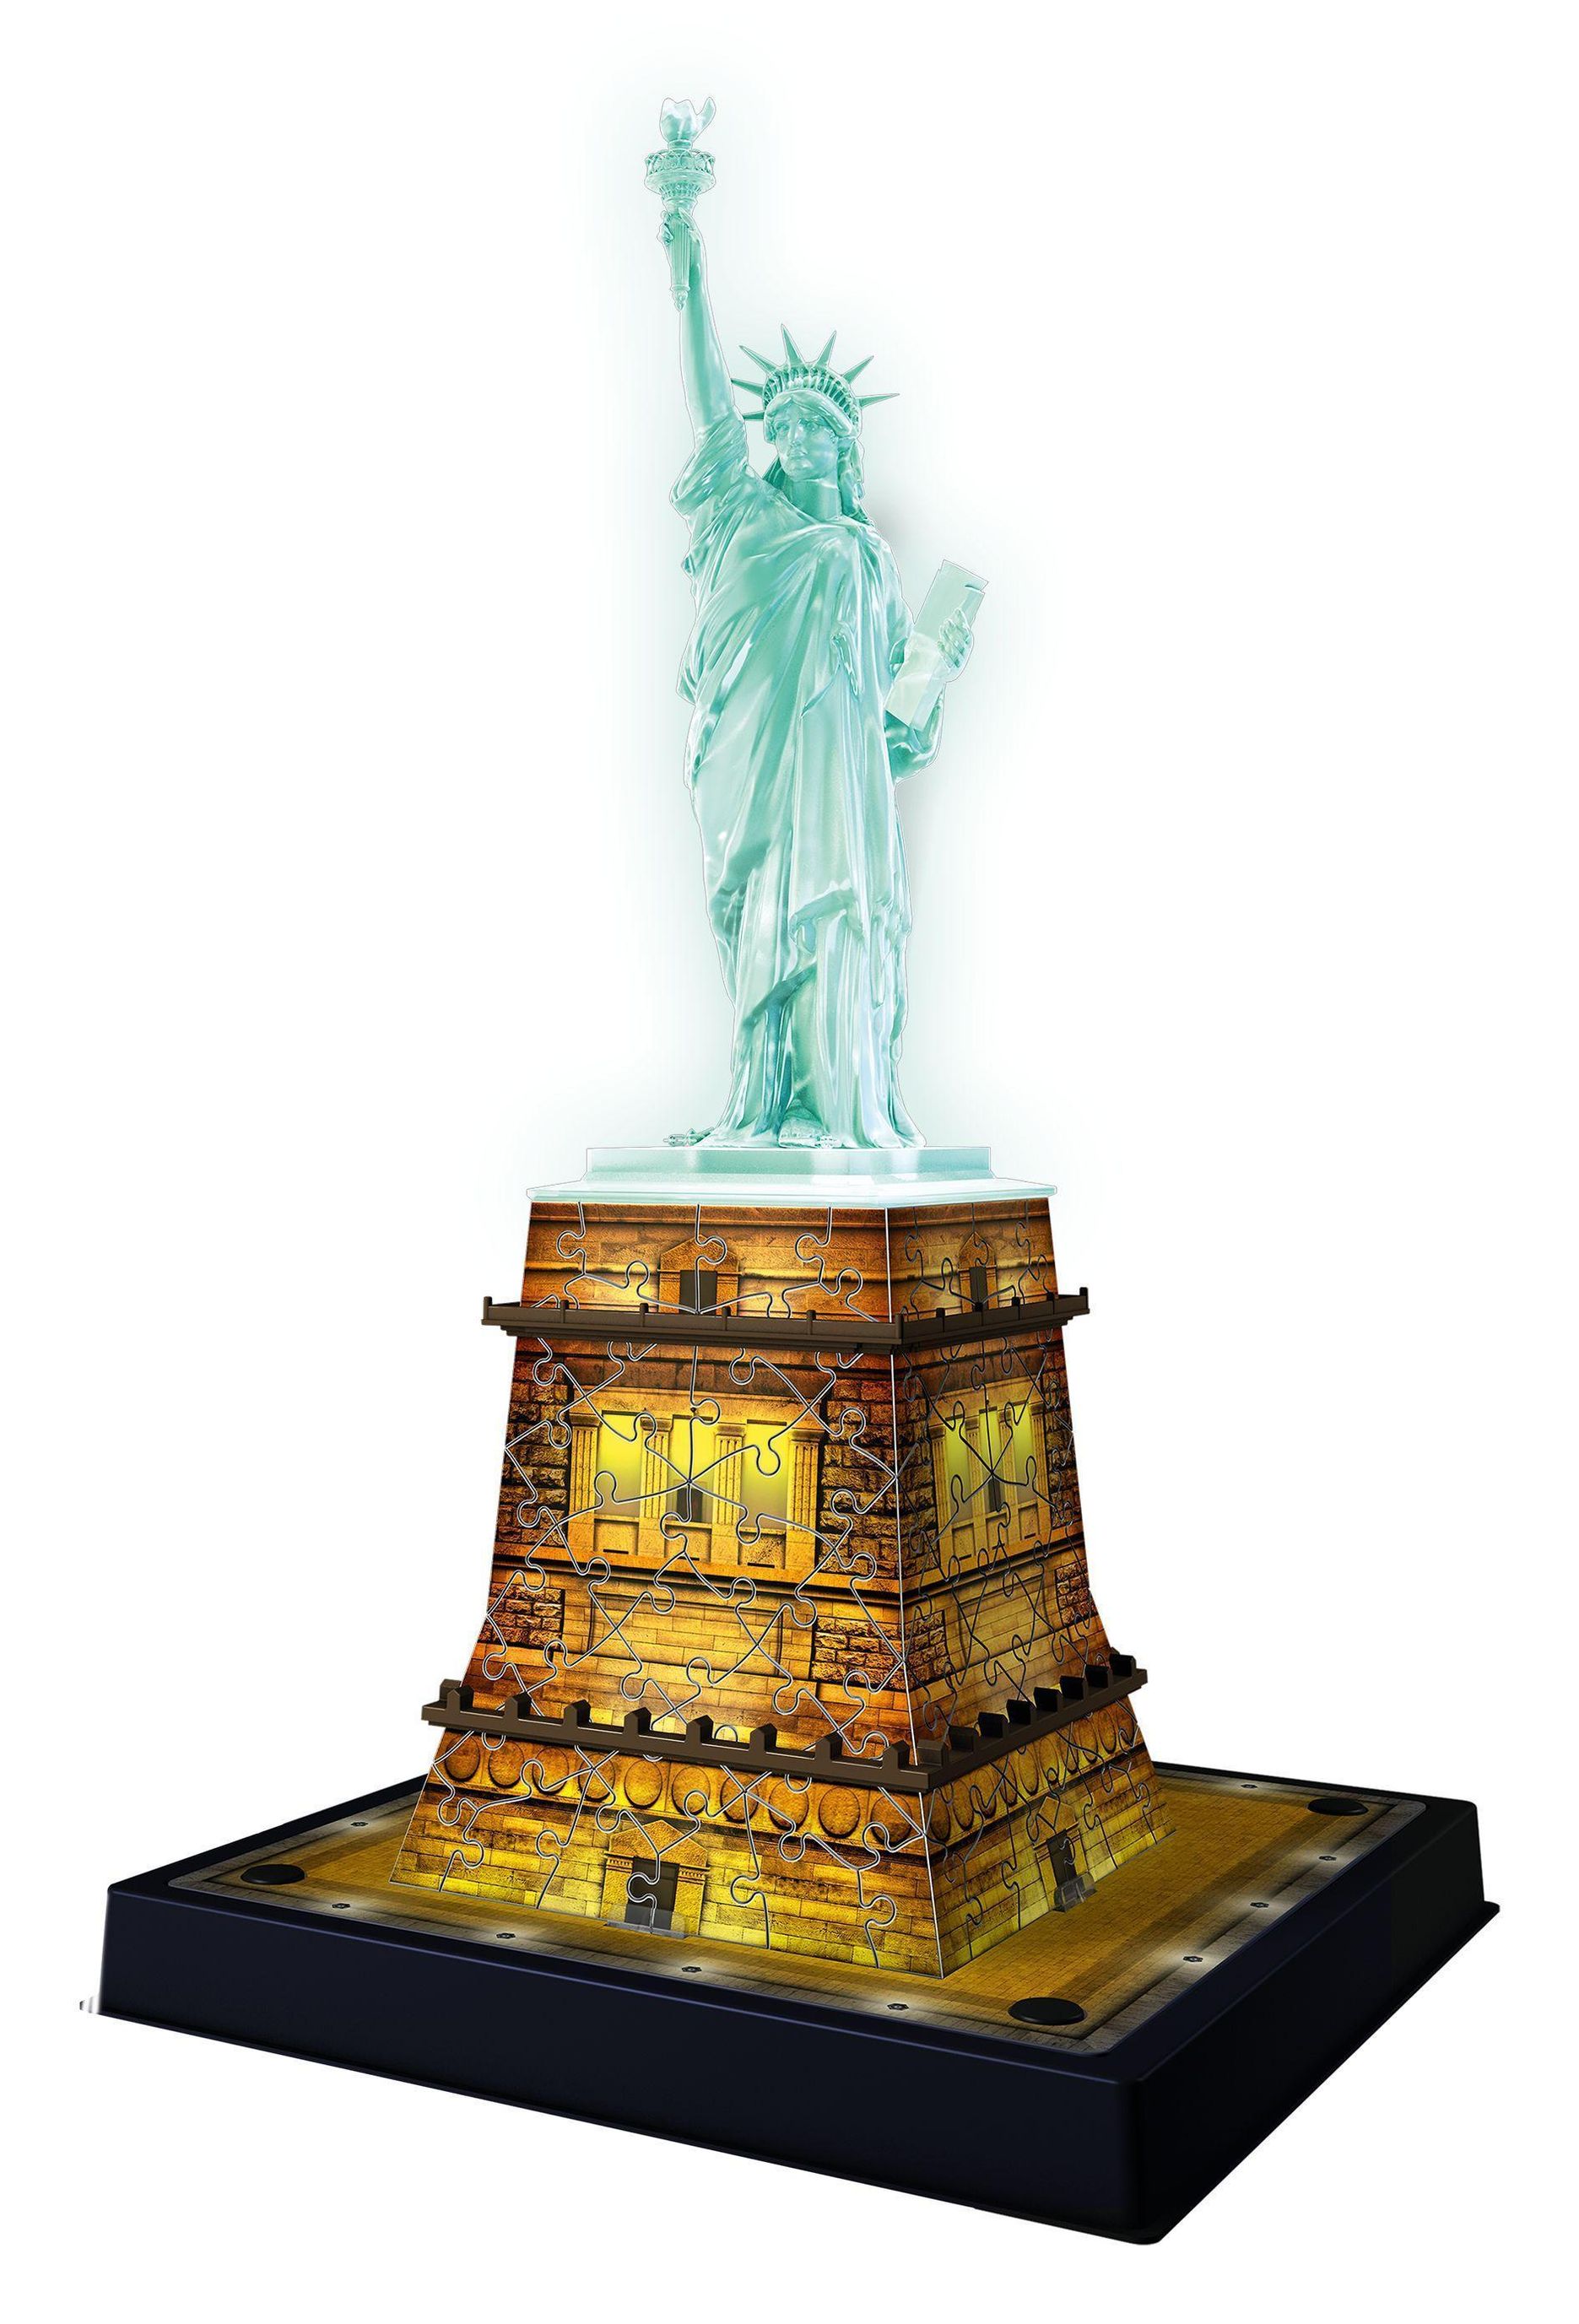 Ravensburger 3D Puzzle Freiheitsstatue bei Nacht 12596 - Das berühmte  Bauwerk in New York als Night Edition mit LED